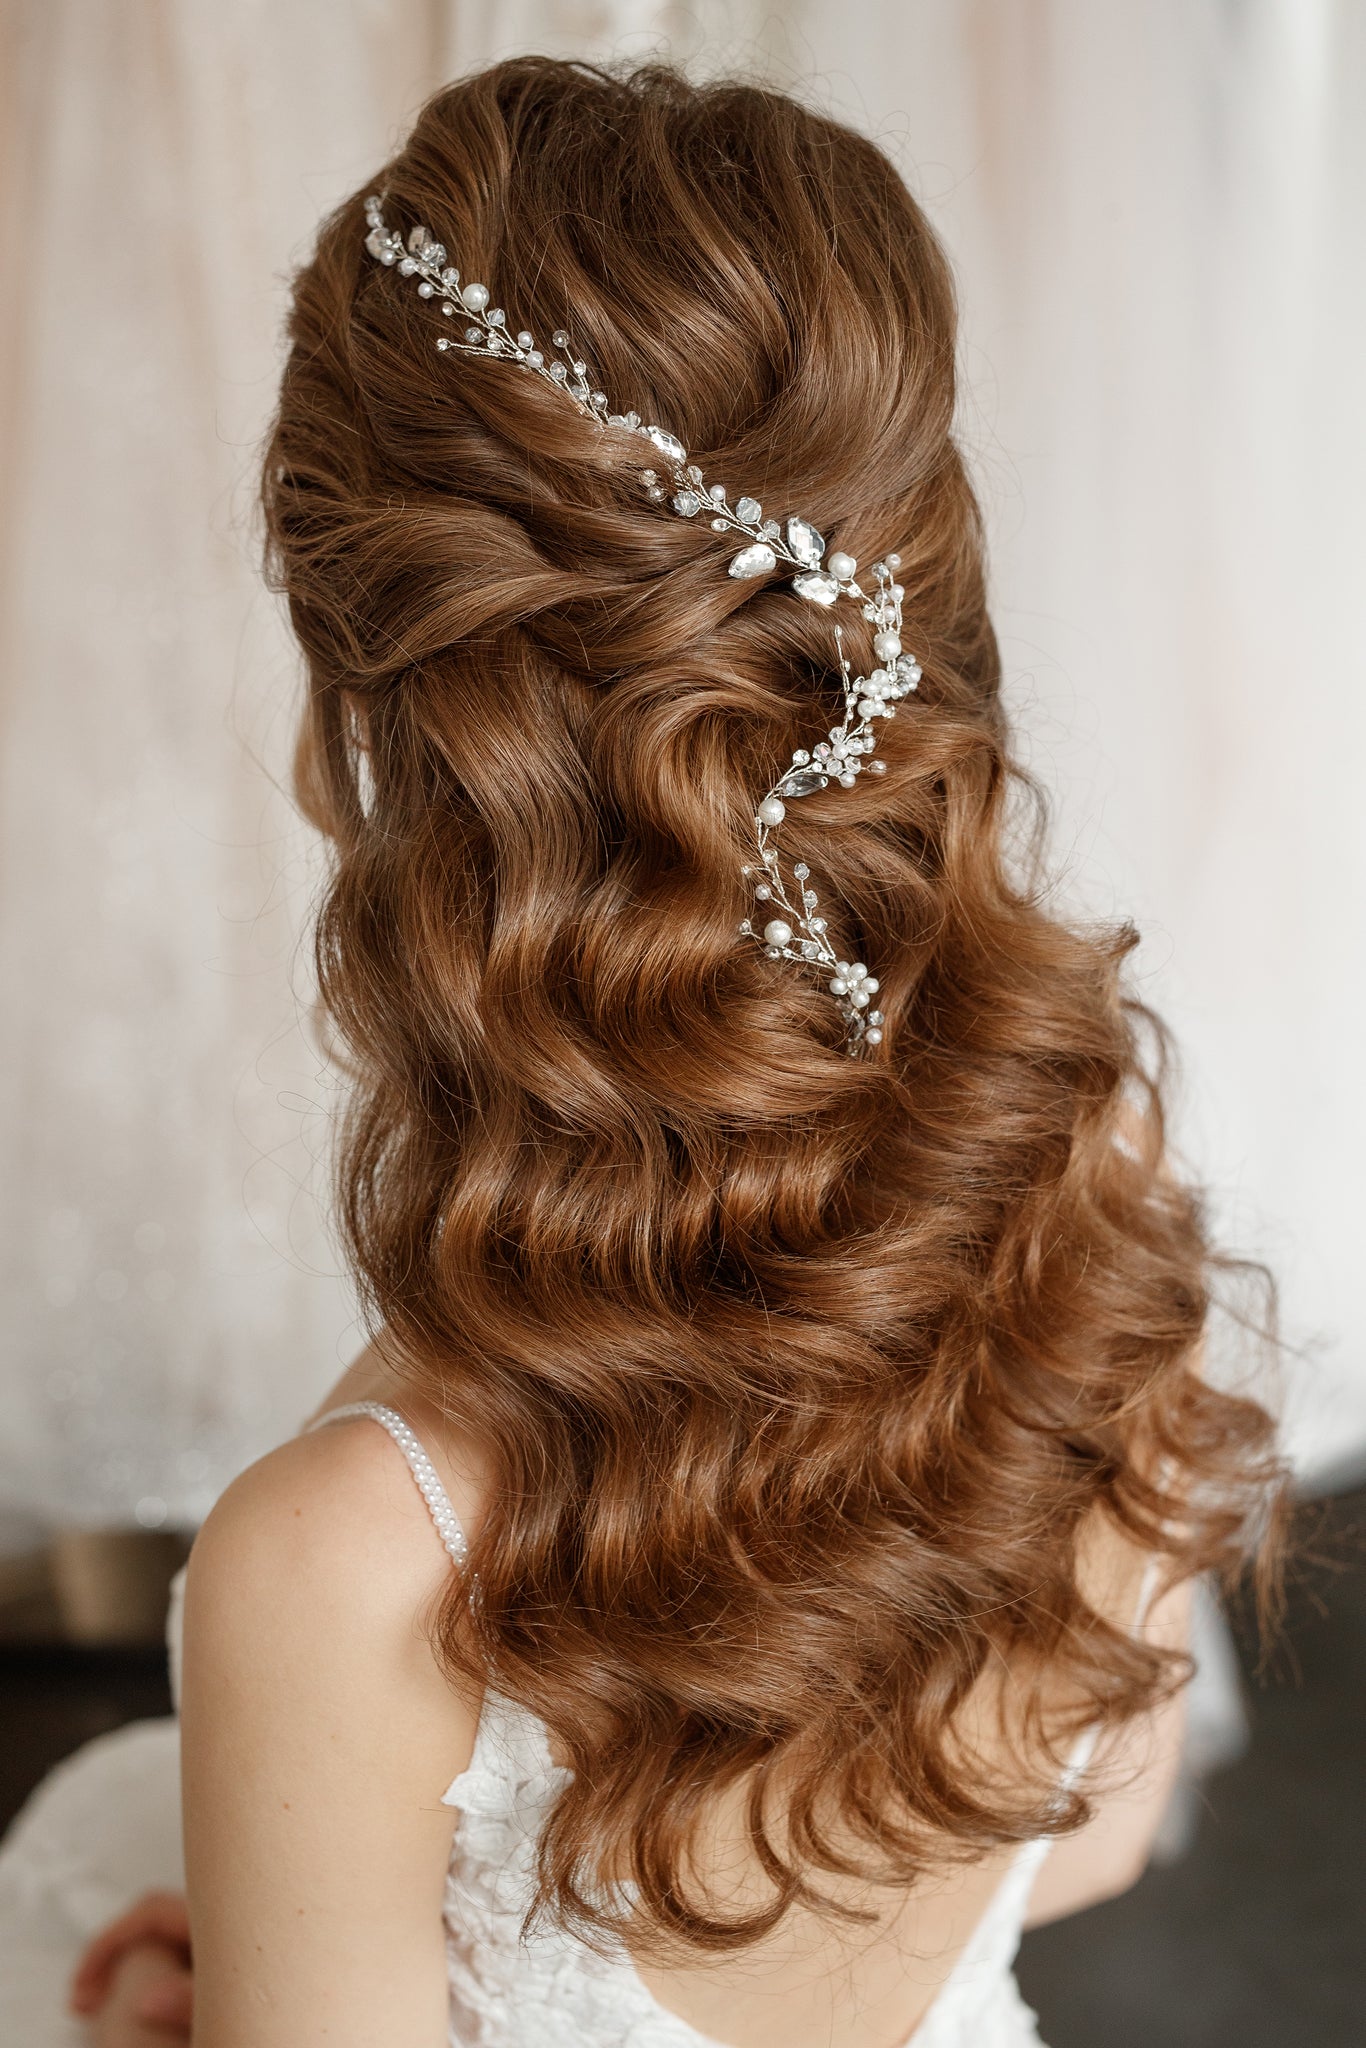 Bridal hair piece, boho wedding hair accessories